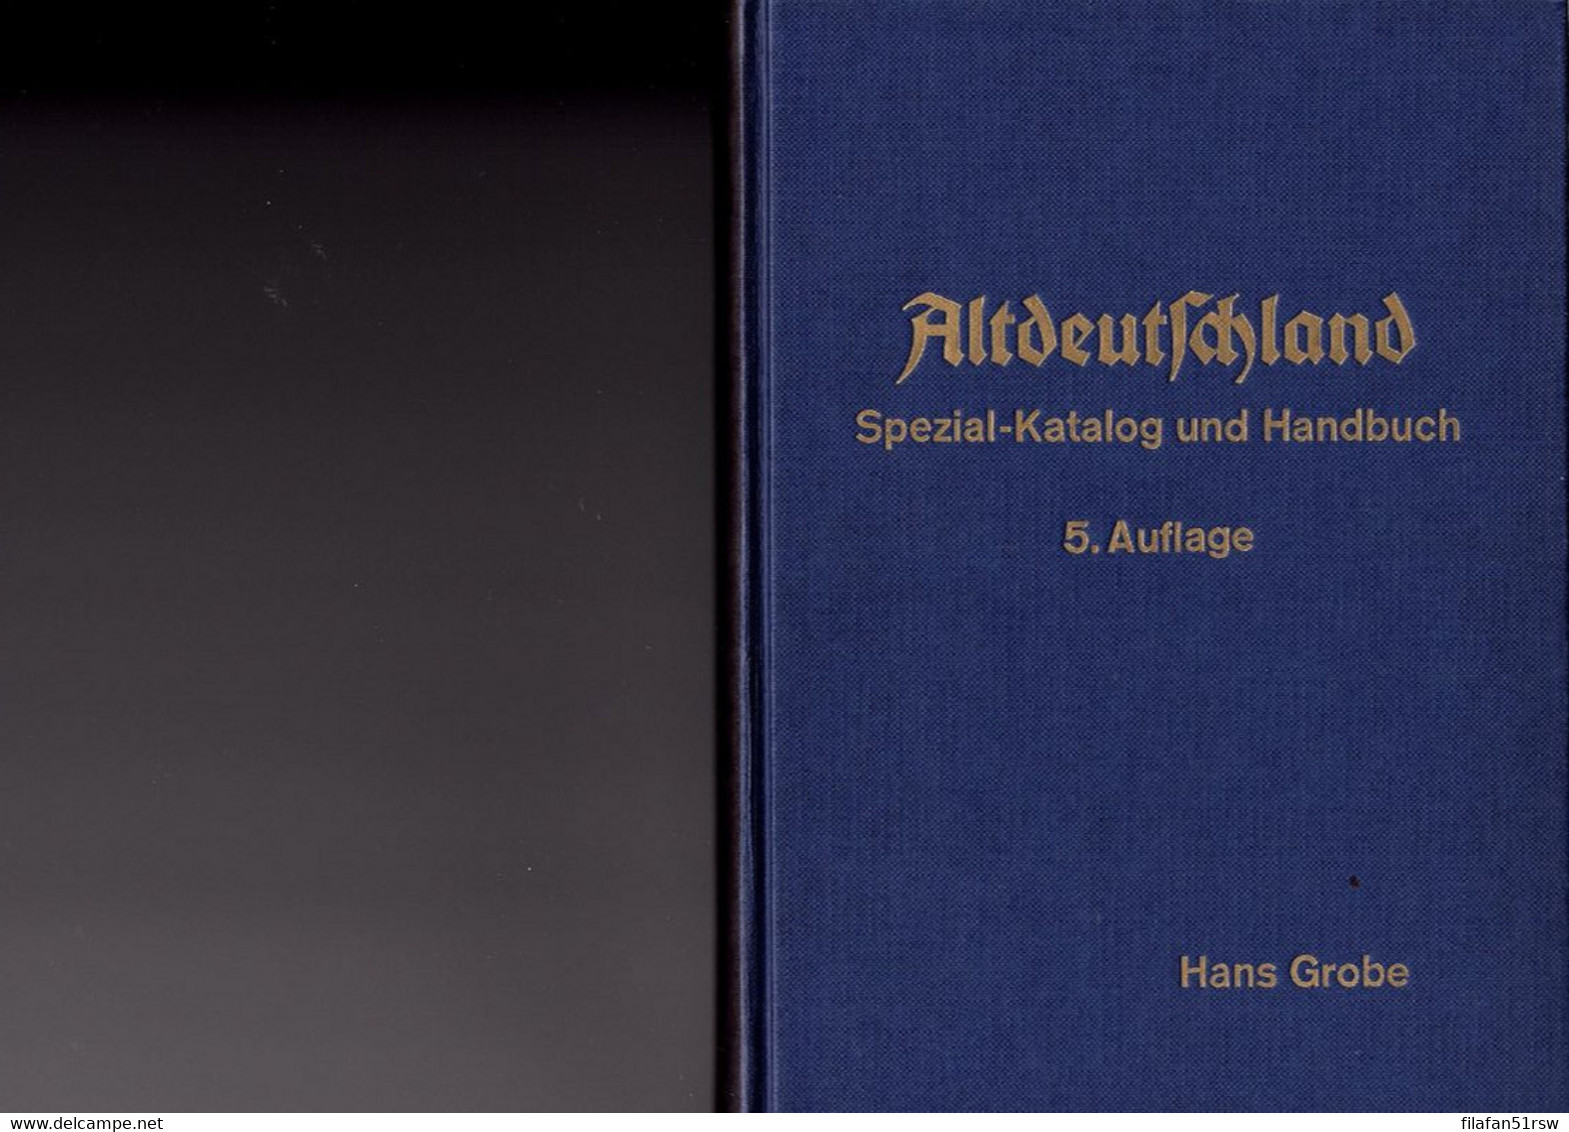 Grobe Altdeutschland Spezial-Katalog Und Handbuch 5. Auflage, Hans Grobe Und Theodor Oppermann Hannover - Handboeken